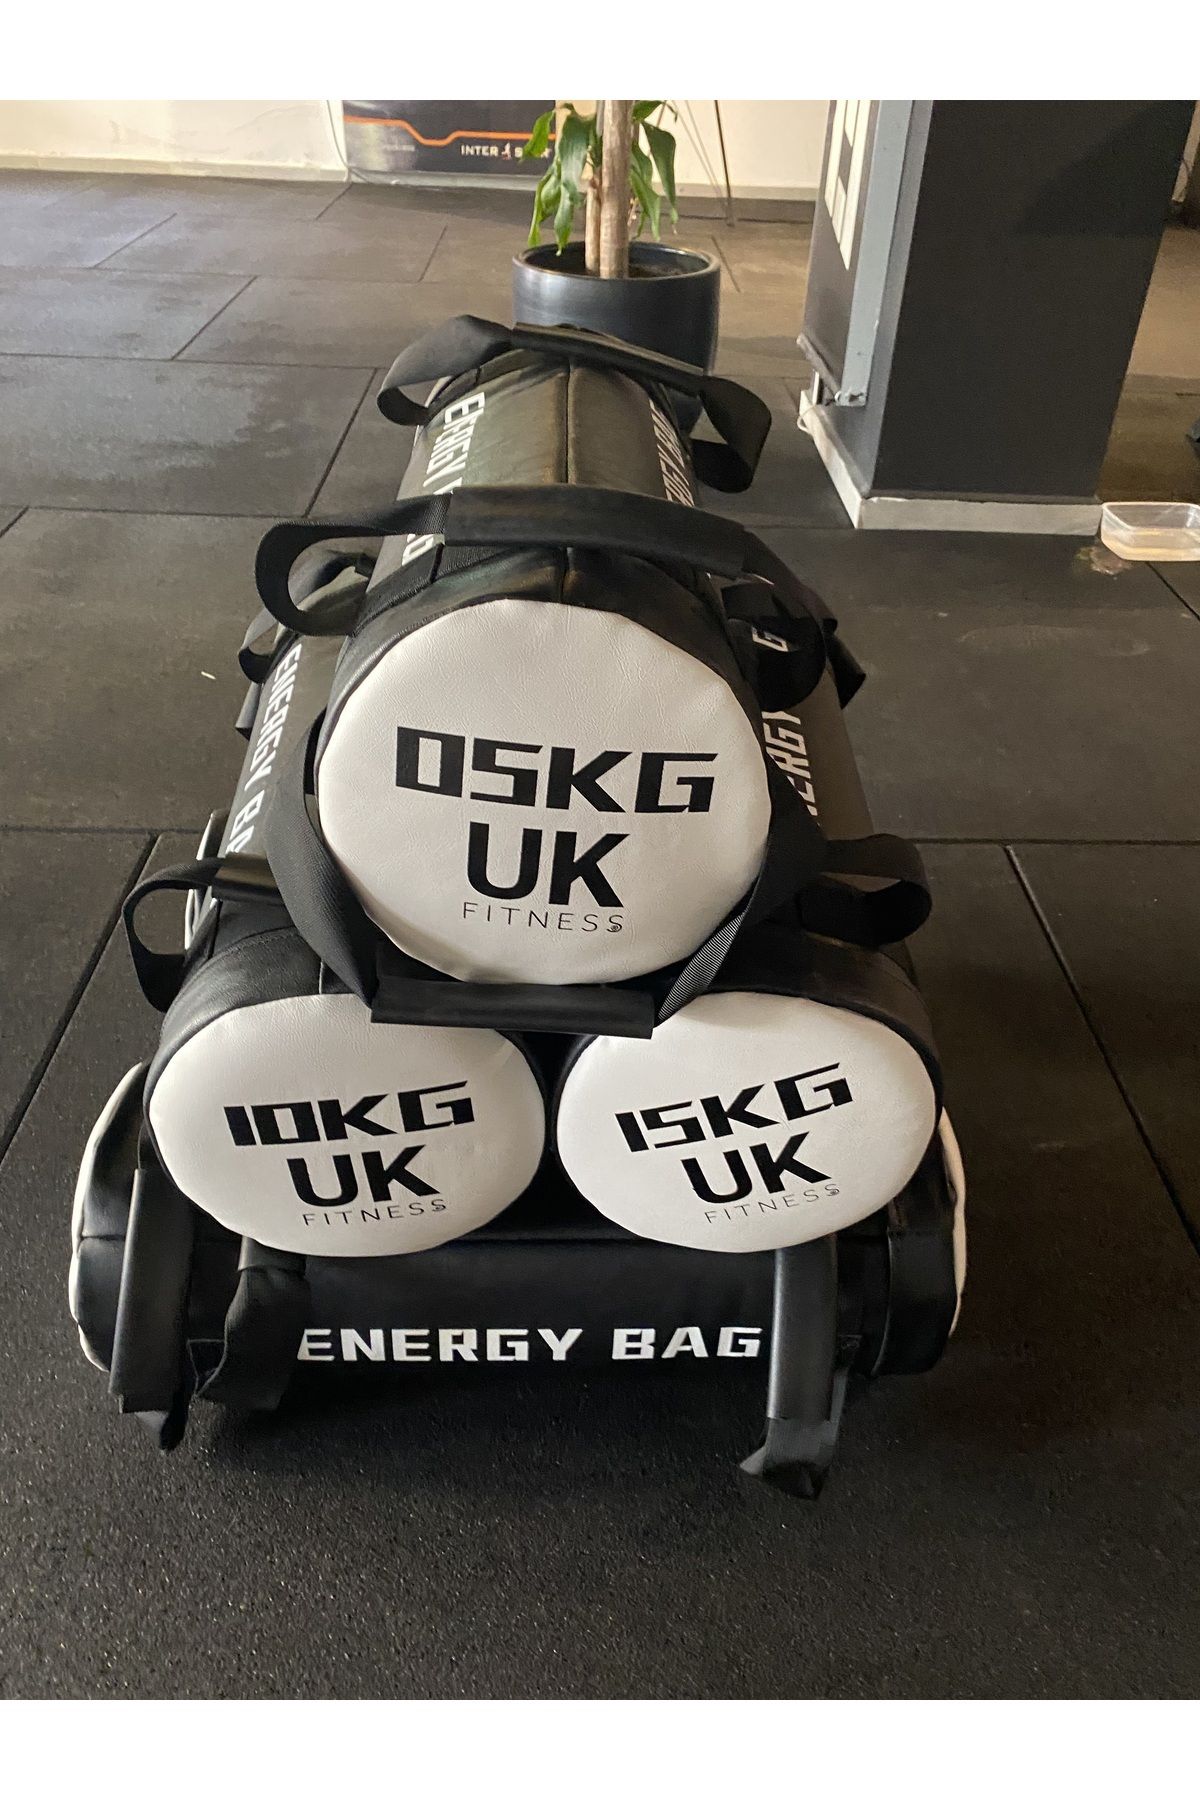 UK FİTNESS Uk Fitness 25 kg Power Bag Ağırlık Çantası Pro.